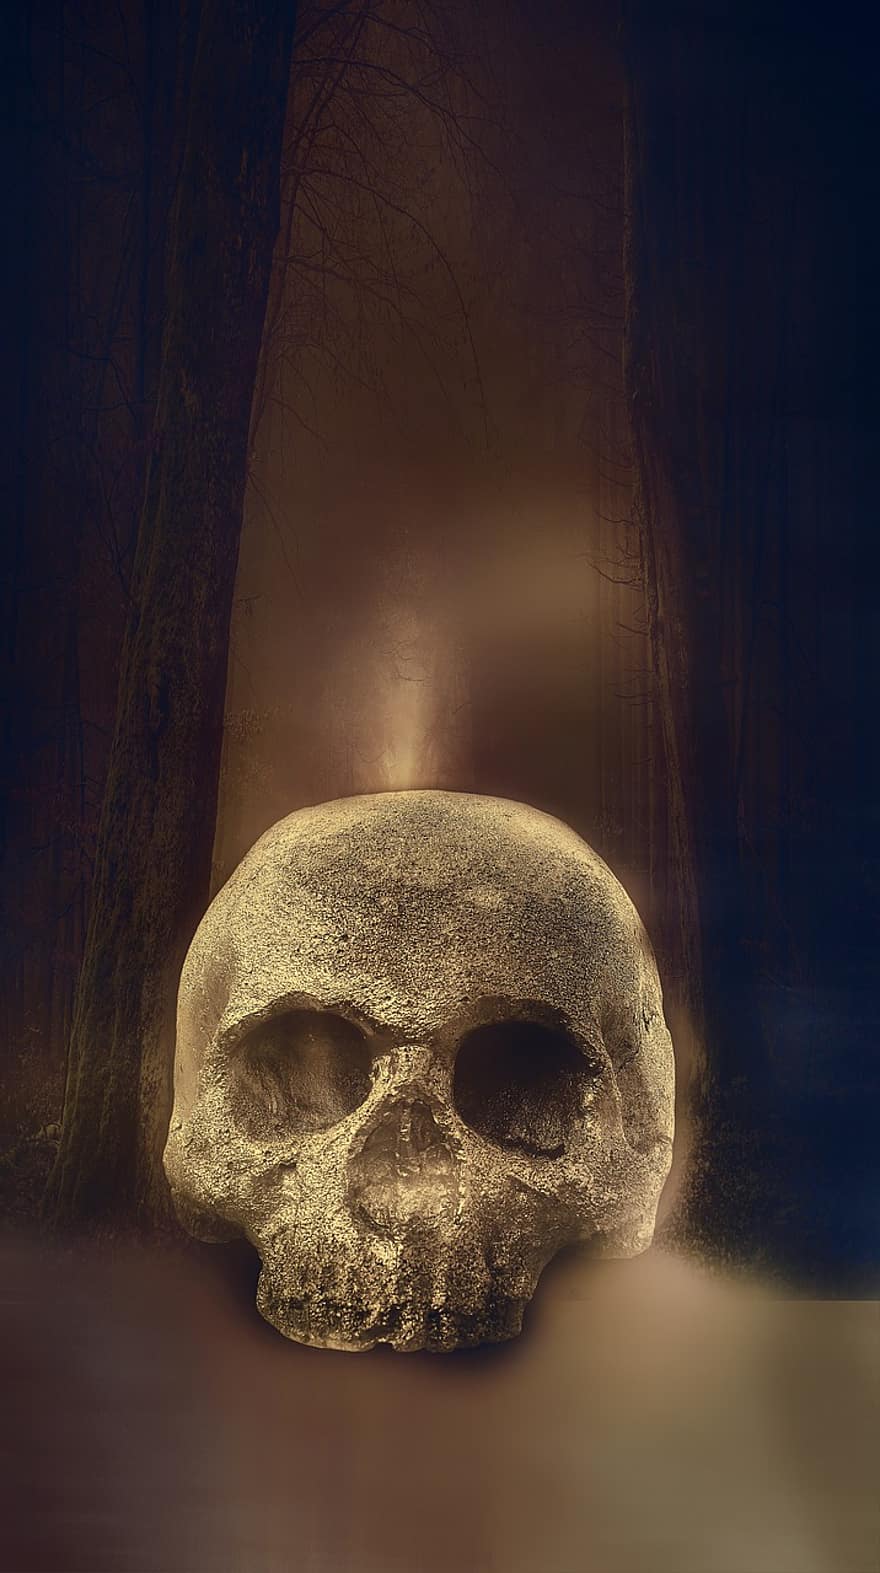 Skull, Skeleton, Horror, Halloween, A, Scary